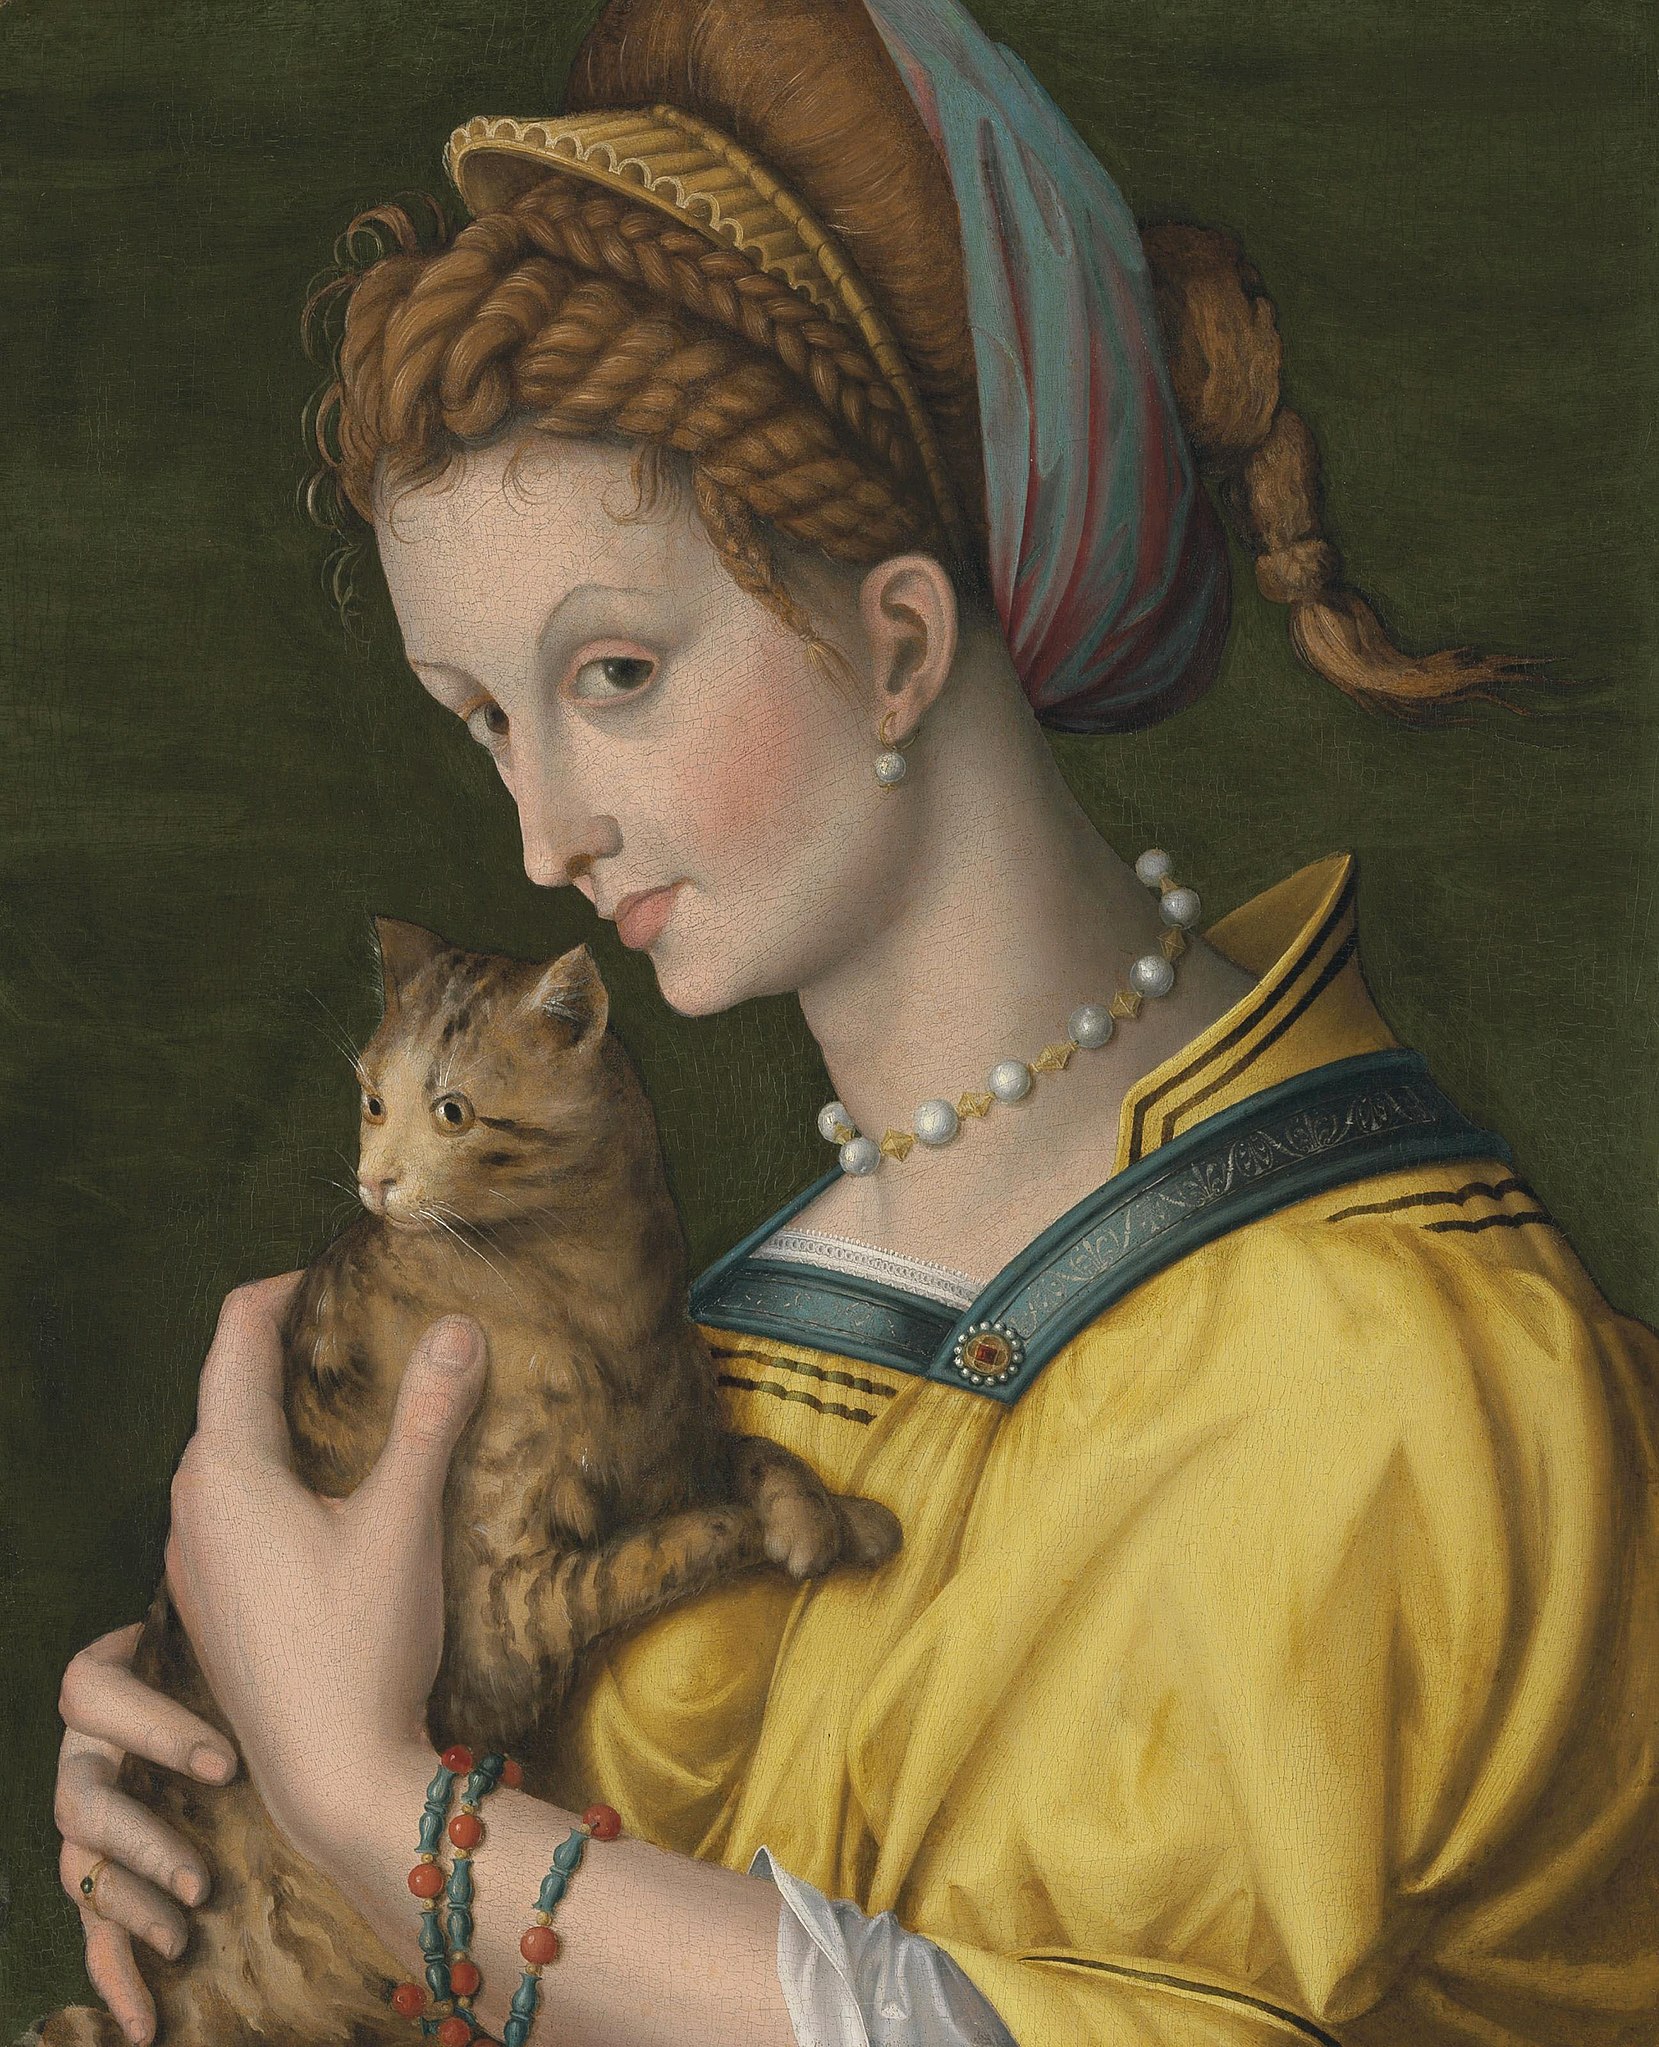 Retrato de joven dama con un gato by Antonio d'Ubertino Verdi, called Bachiacca - Desde aproximadamente 1525 hasta 1530 - 53,6 x 43,8 cm Colección privada